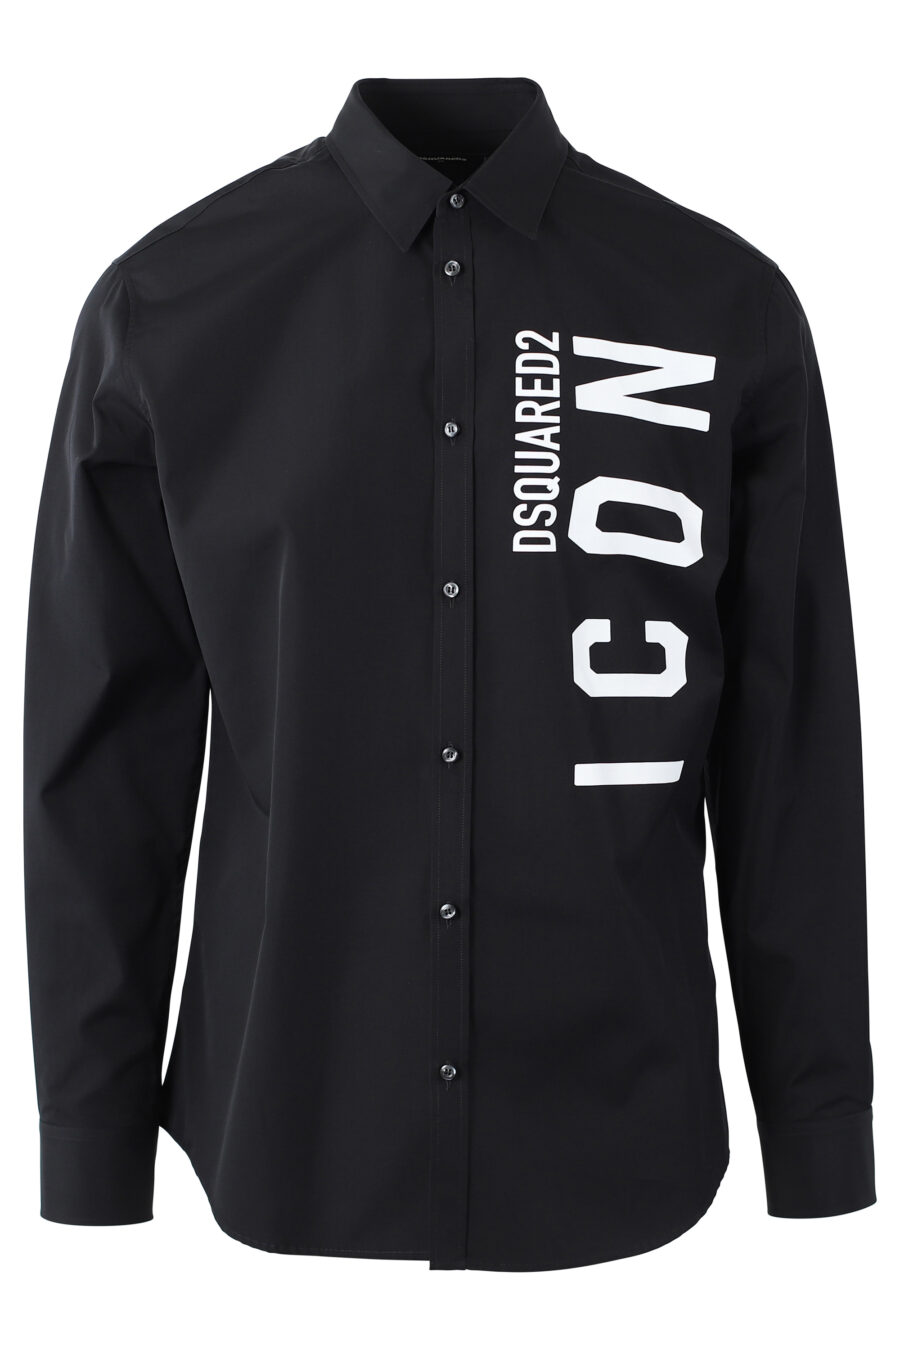 Camisa negra con maxilogo doble logo "icon" vertical - IMG 1102